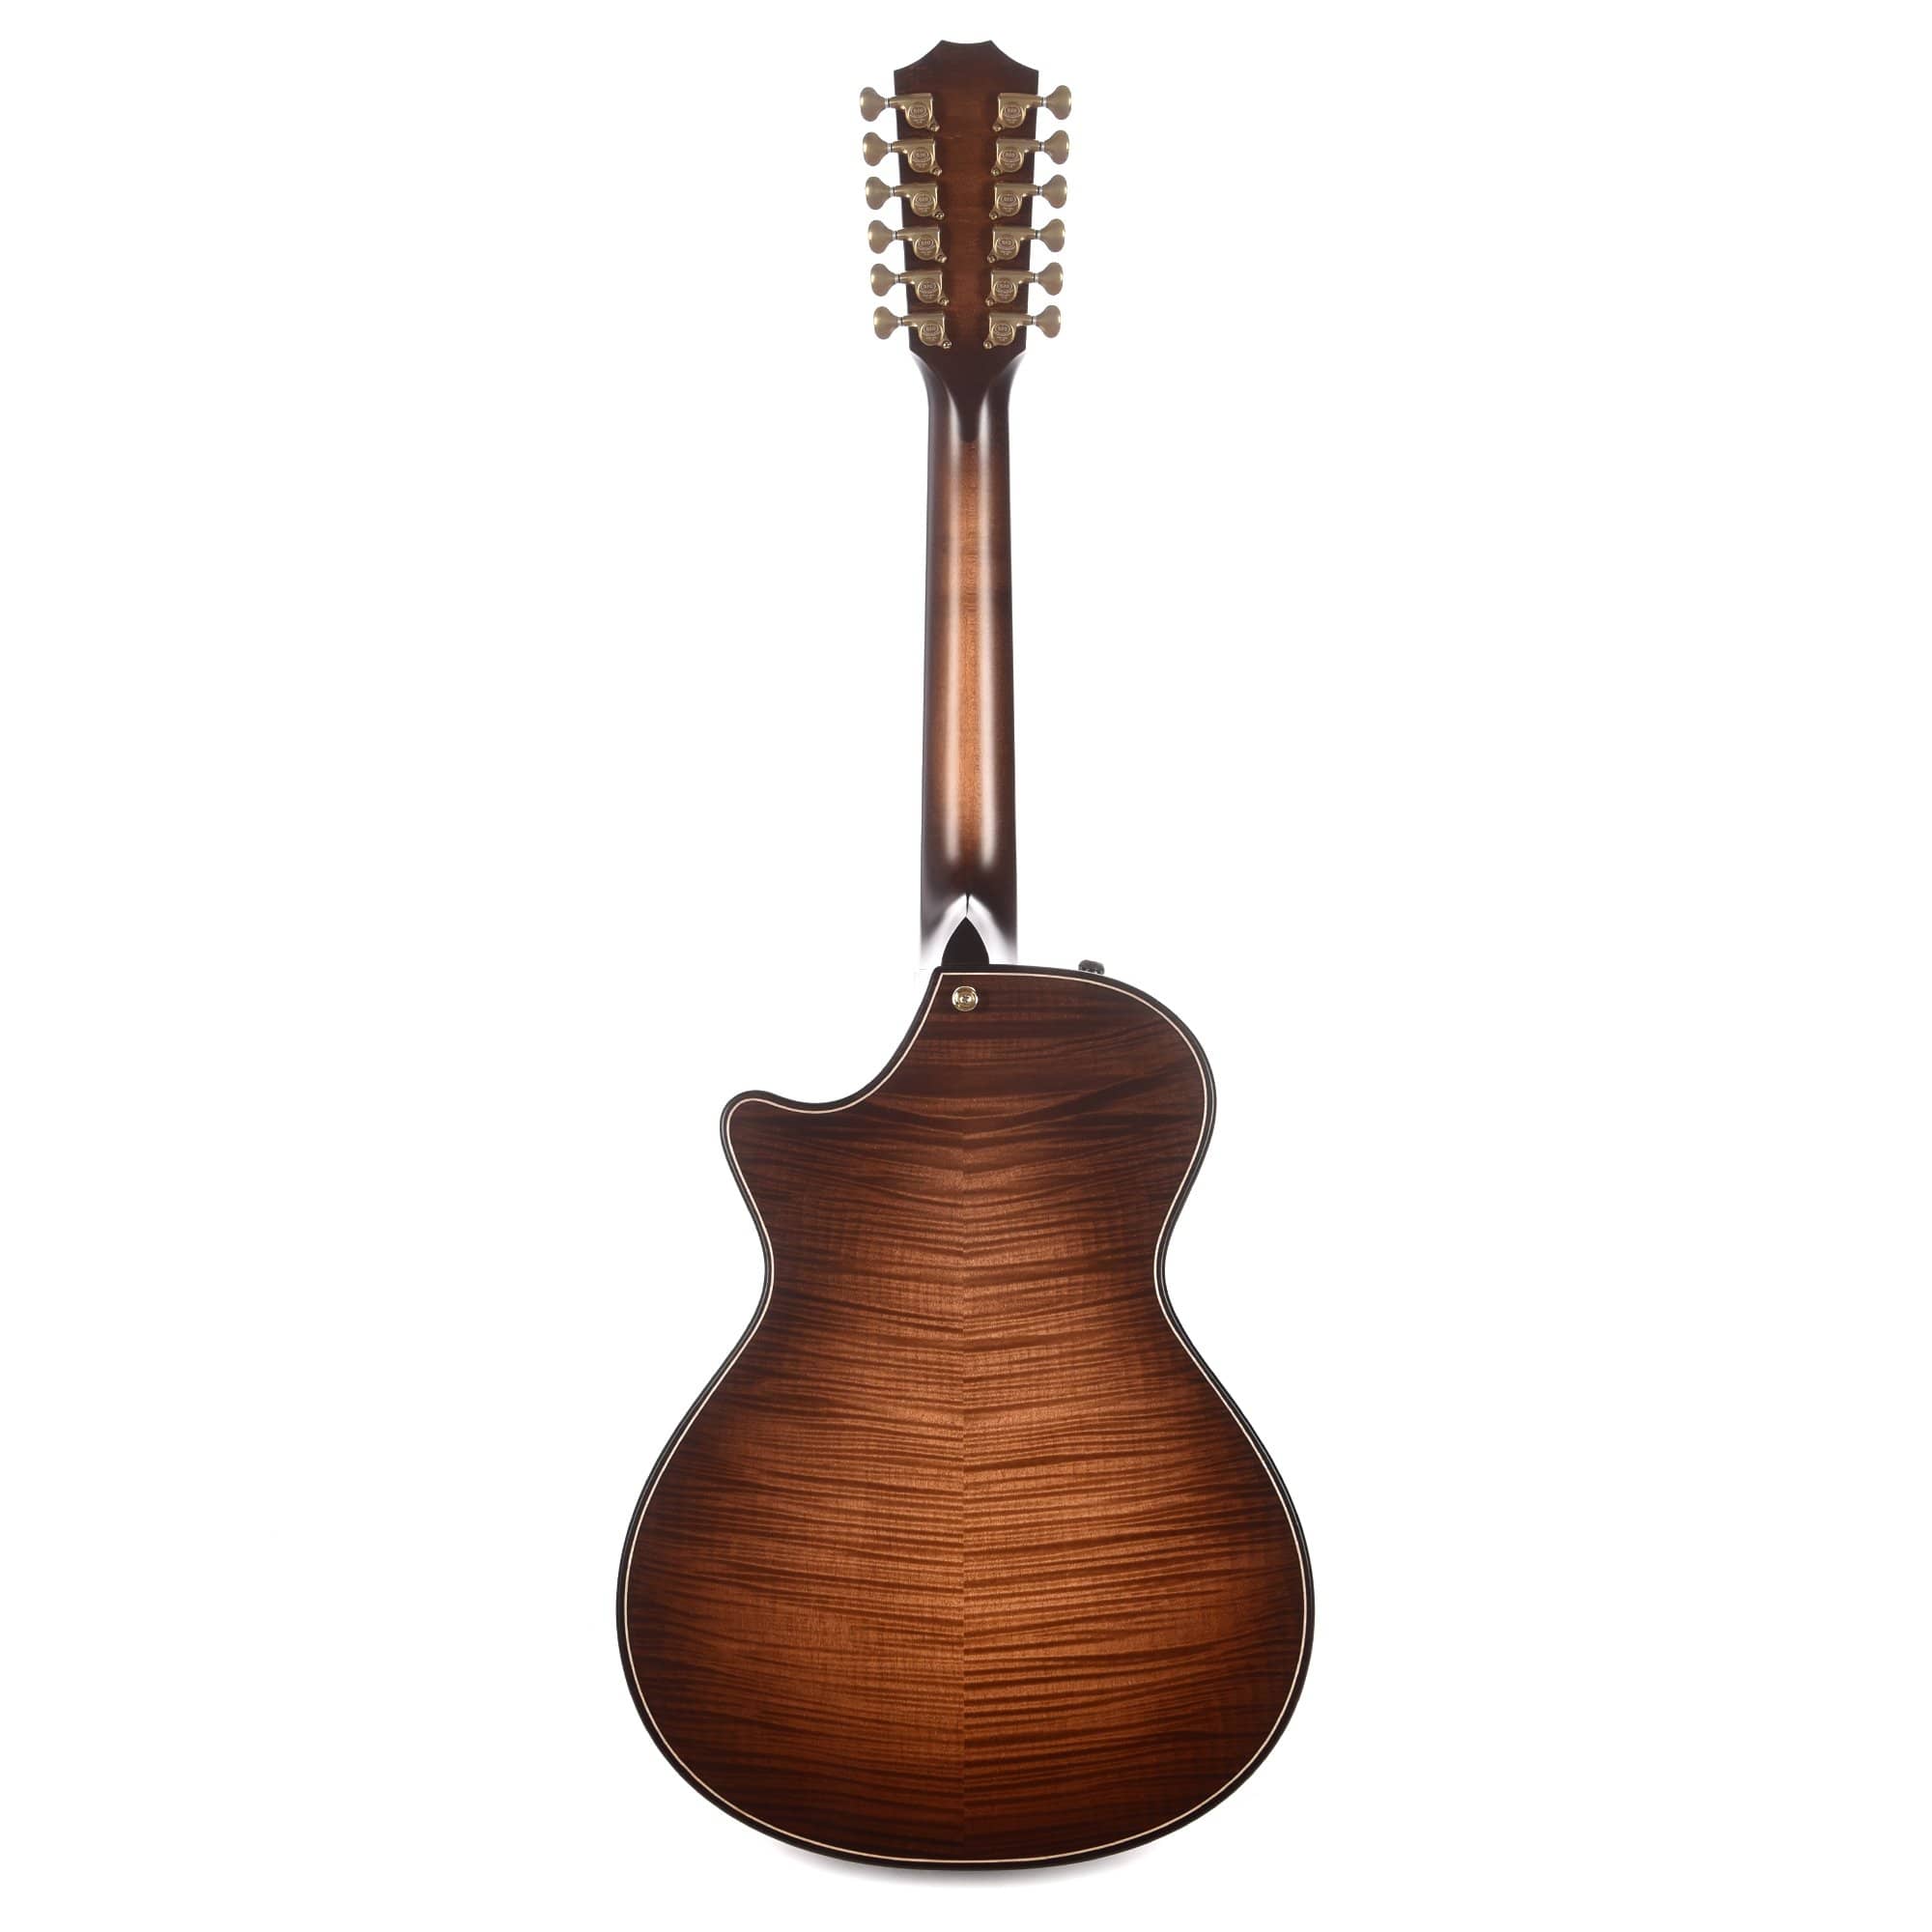 Taylor Builder's Edition 652ce 12-String Grand Concert Torrefied Spruce/Big Leaf Maple Wild Honey Burst ES2 Acoustic Guitars / 12-String